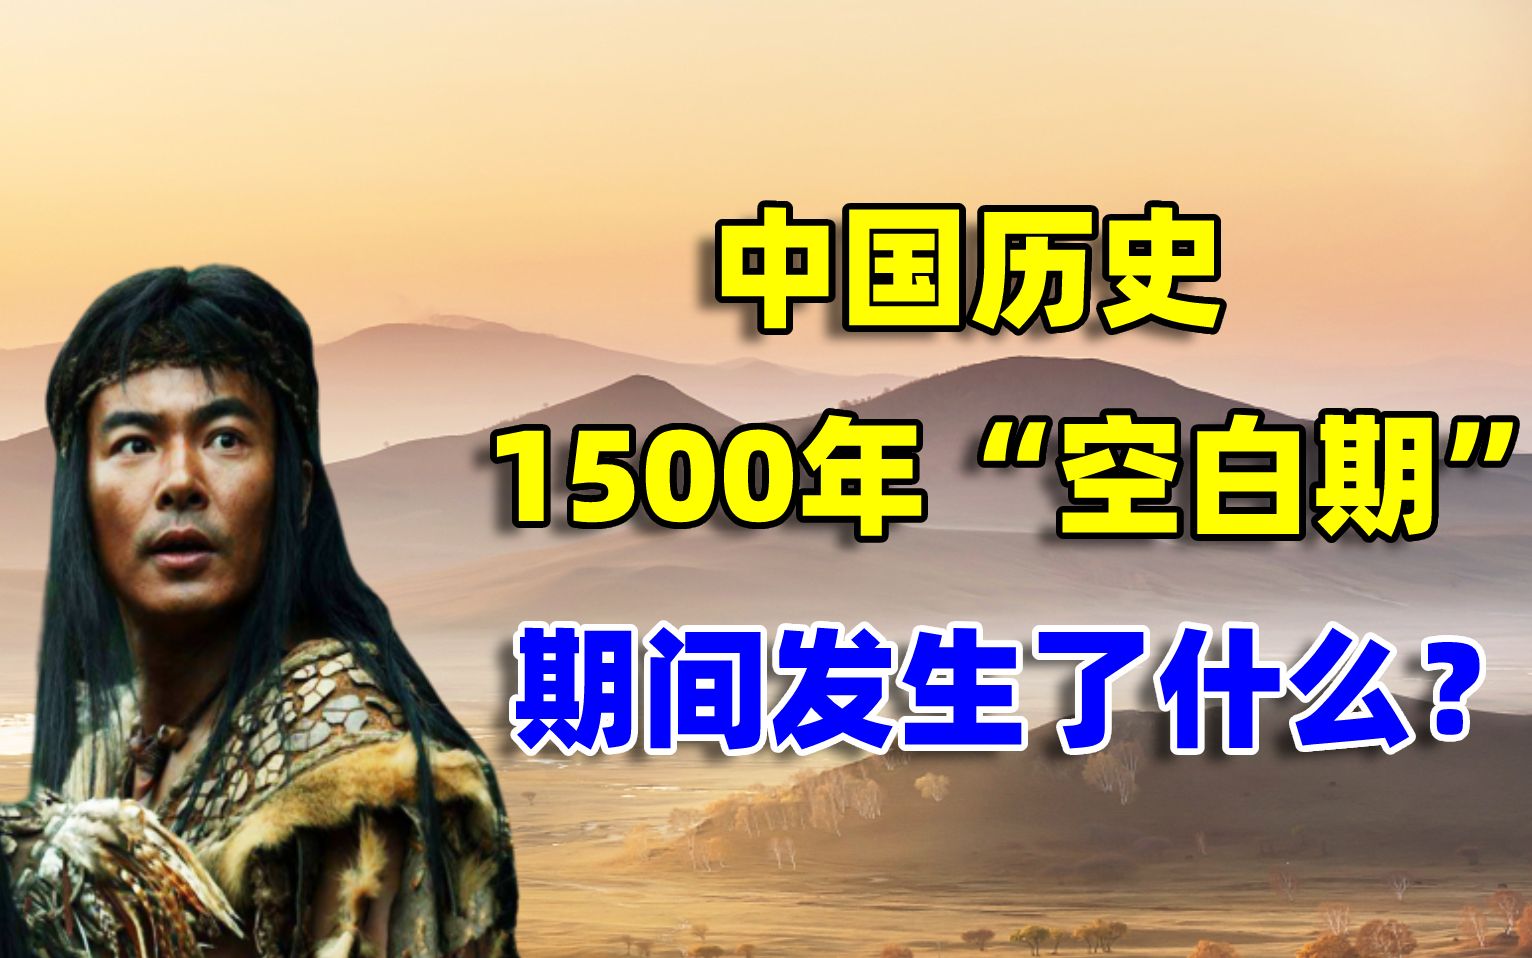 中国历史上1500年的“空白期”，无任何史料记载，期间发生了什么？